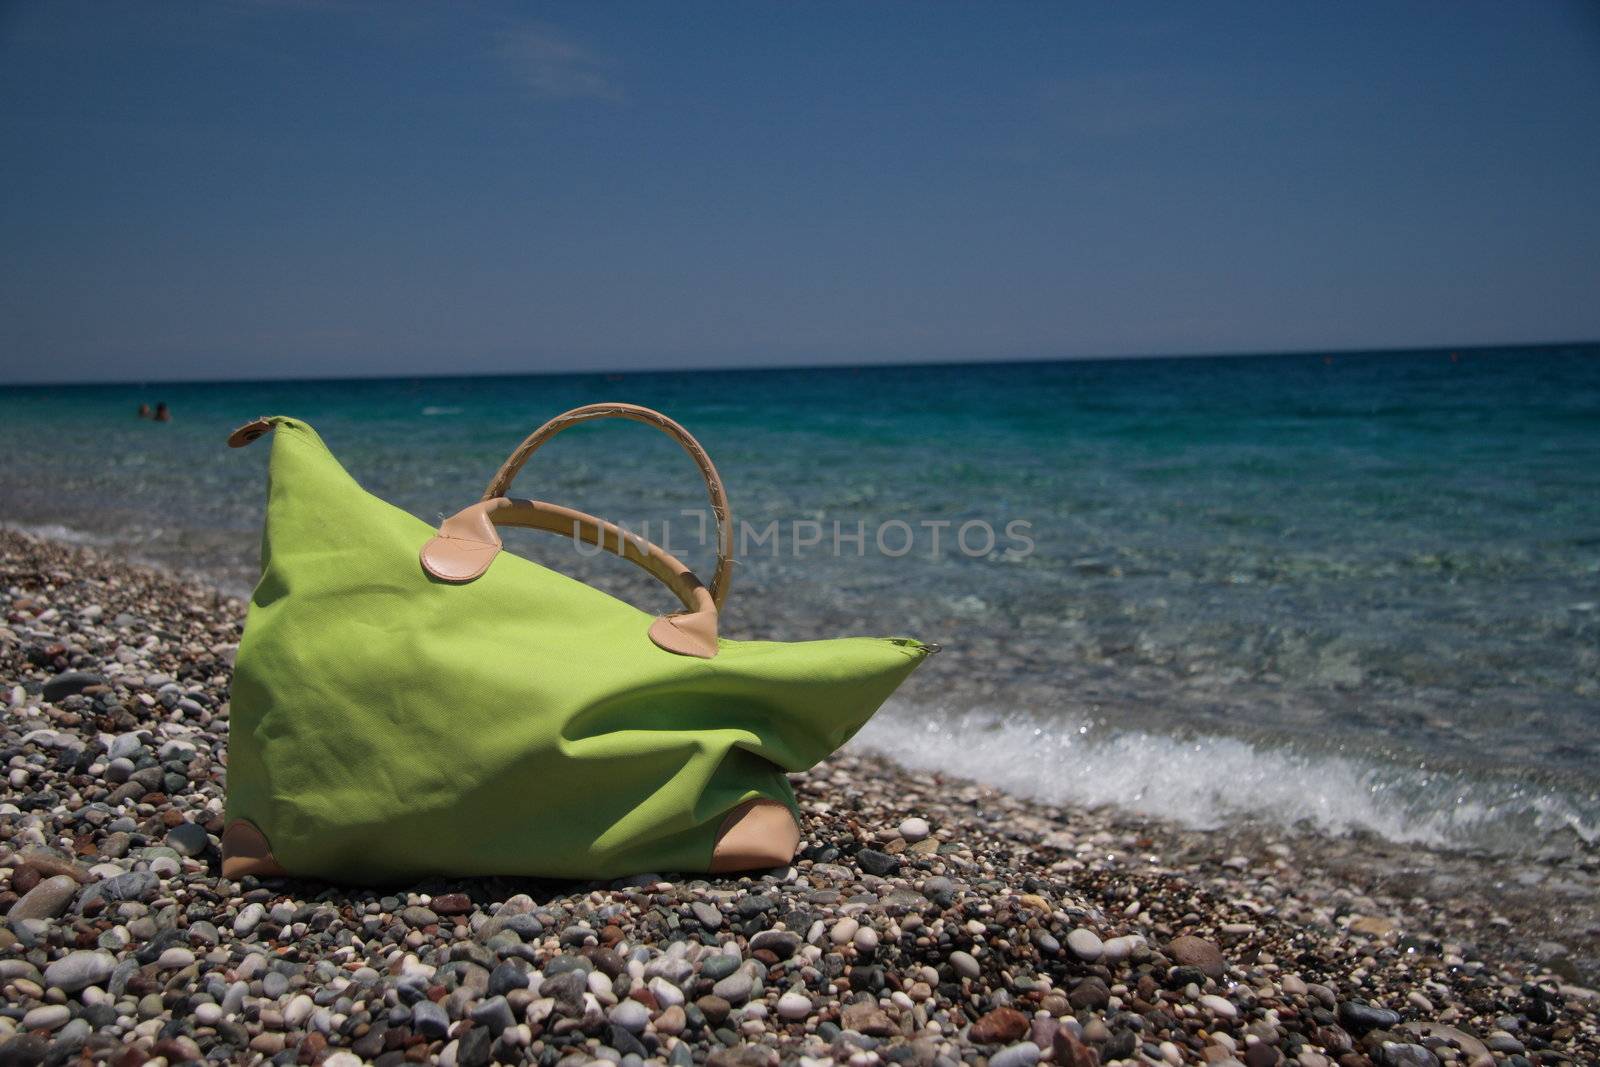 Beach bag, summer holiday dreams by Kudryashka